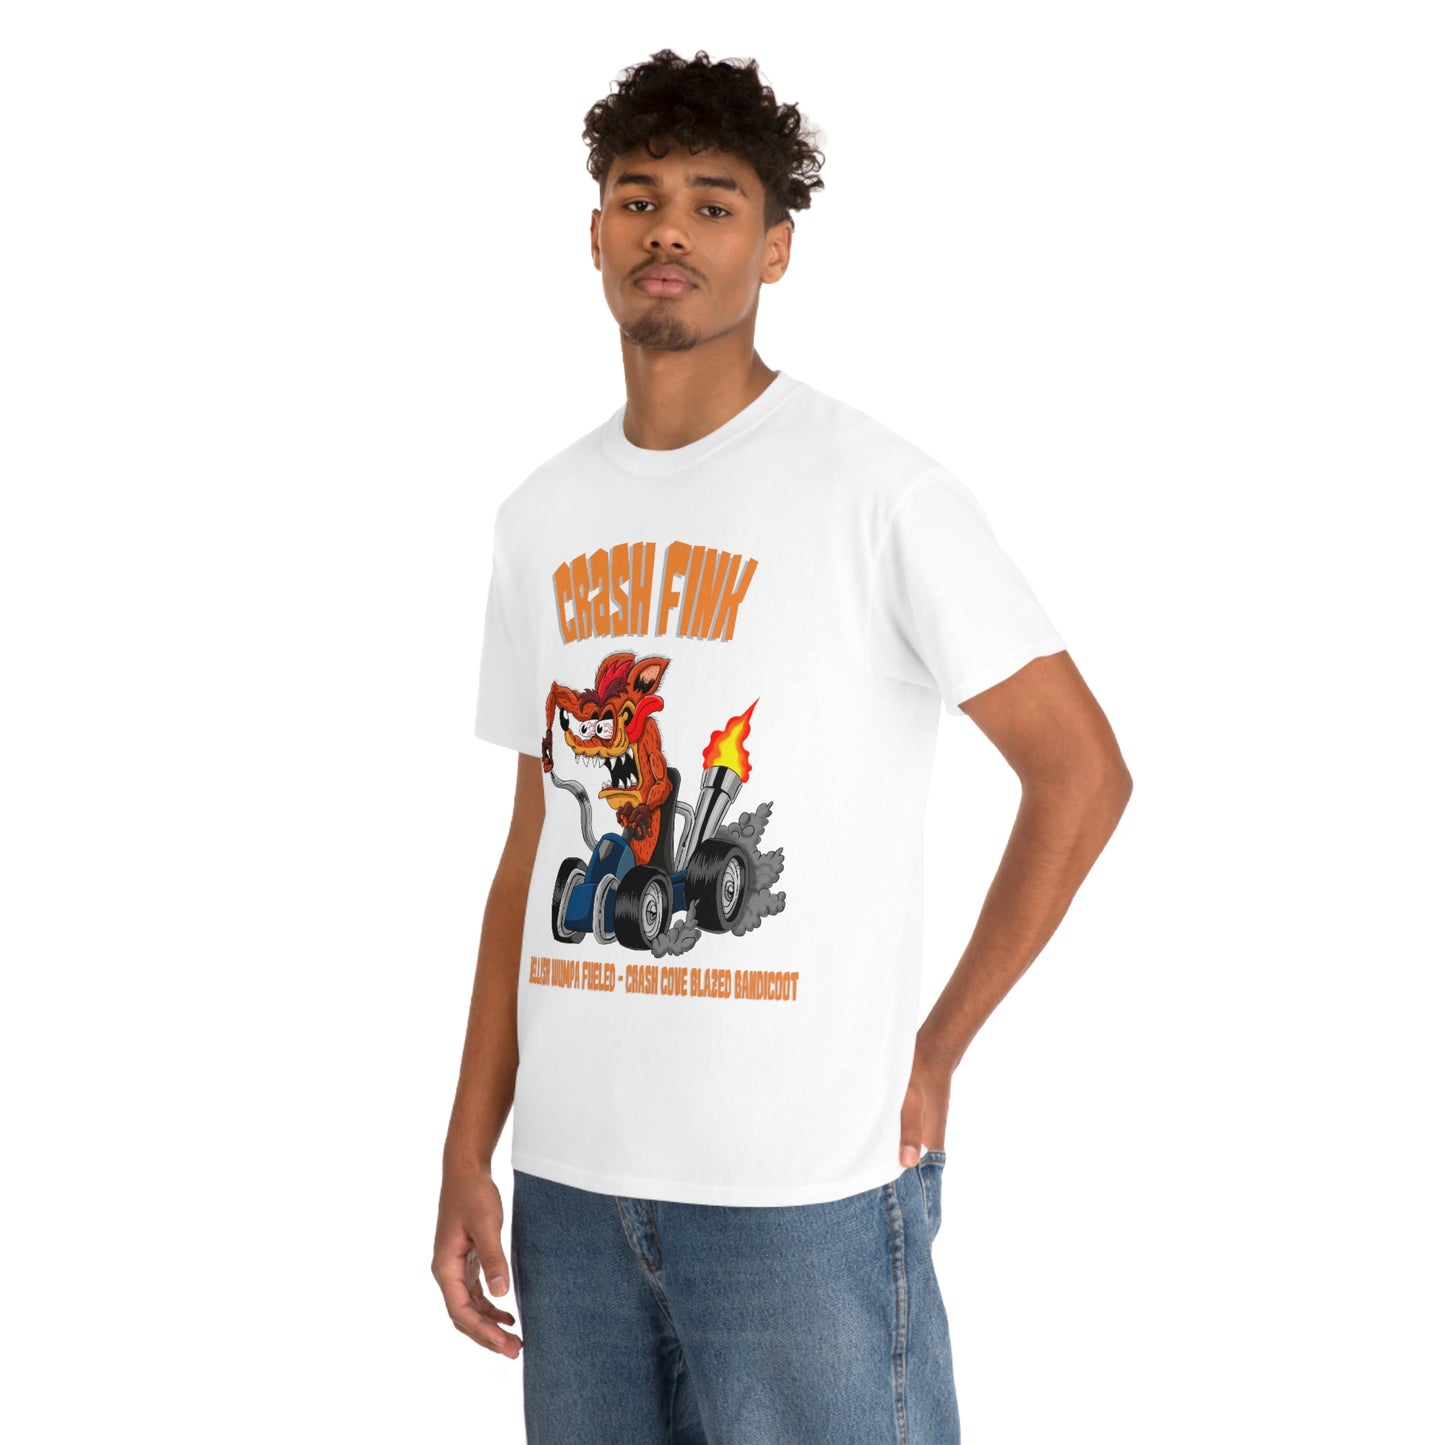 Crash Bandicoot Men's Tee - Crash Fink